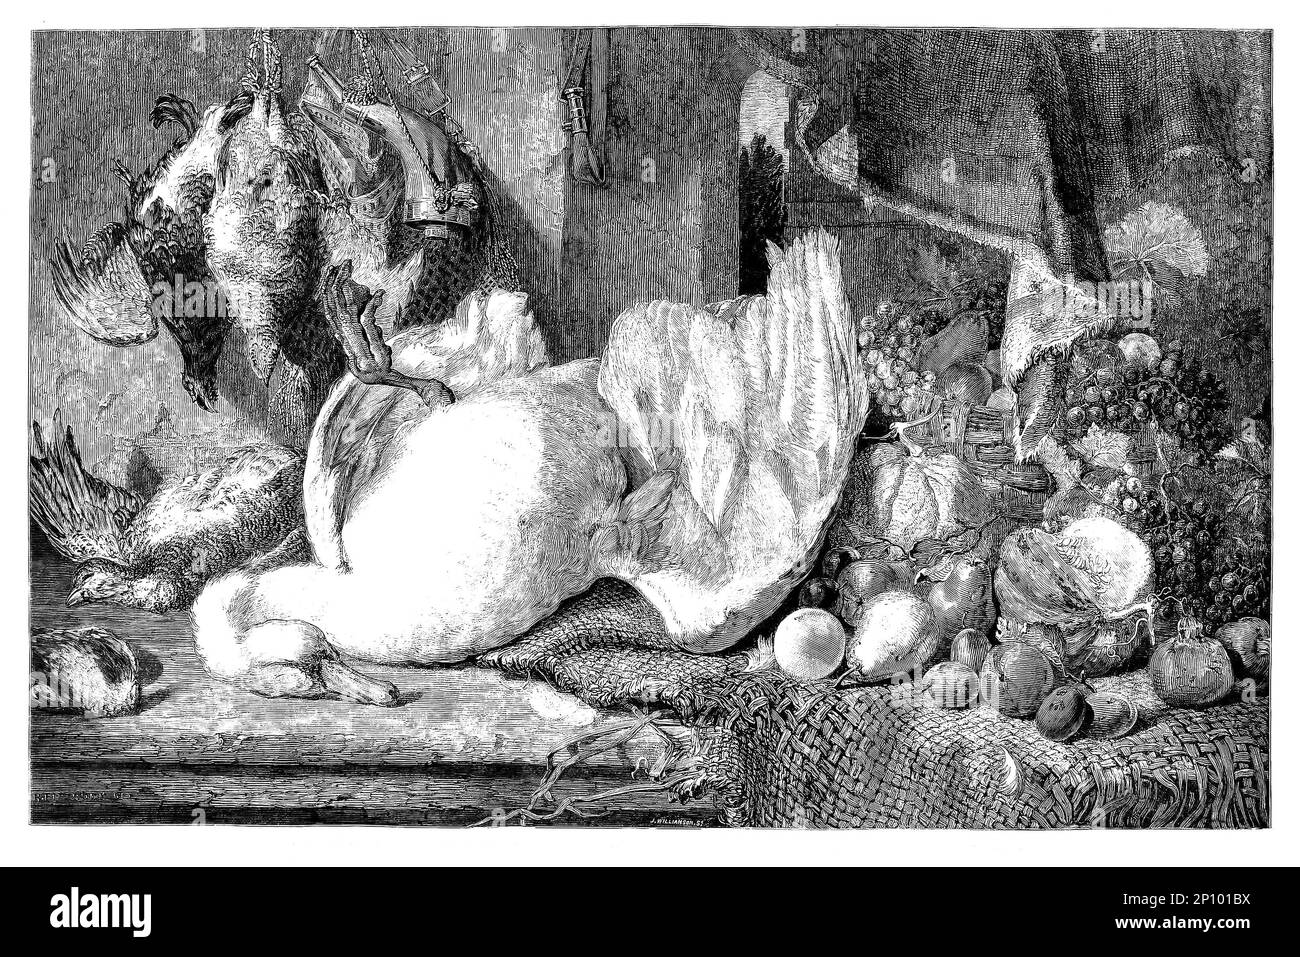 Das Stillleben eines toten Schwans, Federwild und Früchten wird in der britischen Institution vom britischen Künstler William Duffield (1816-1863) ausgestellt, der sich auf das Malen von Obst, Gemüse, Fleisch und totem Wild spezialisiert hat. Stockfoto